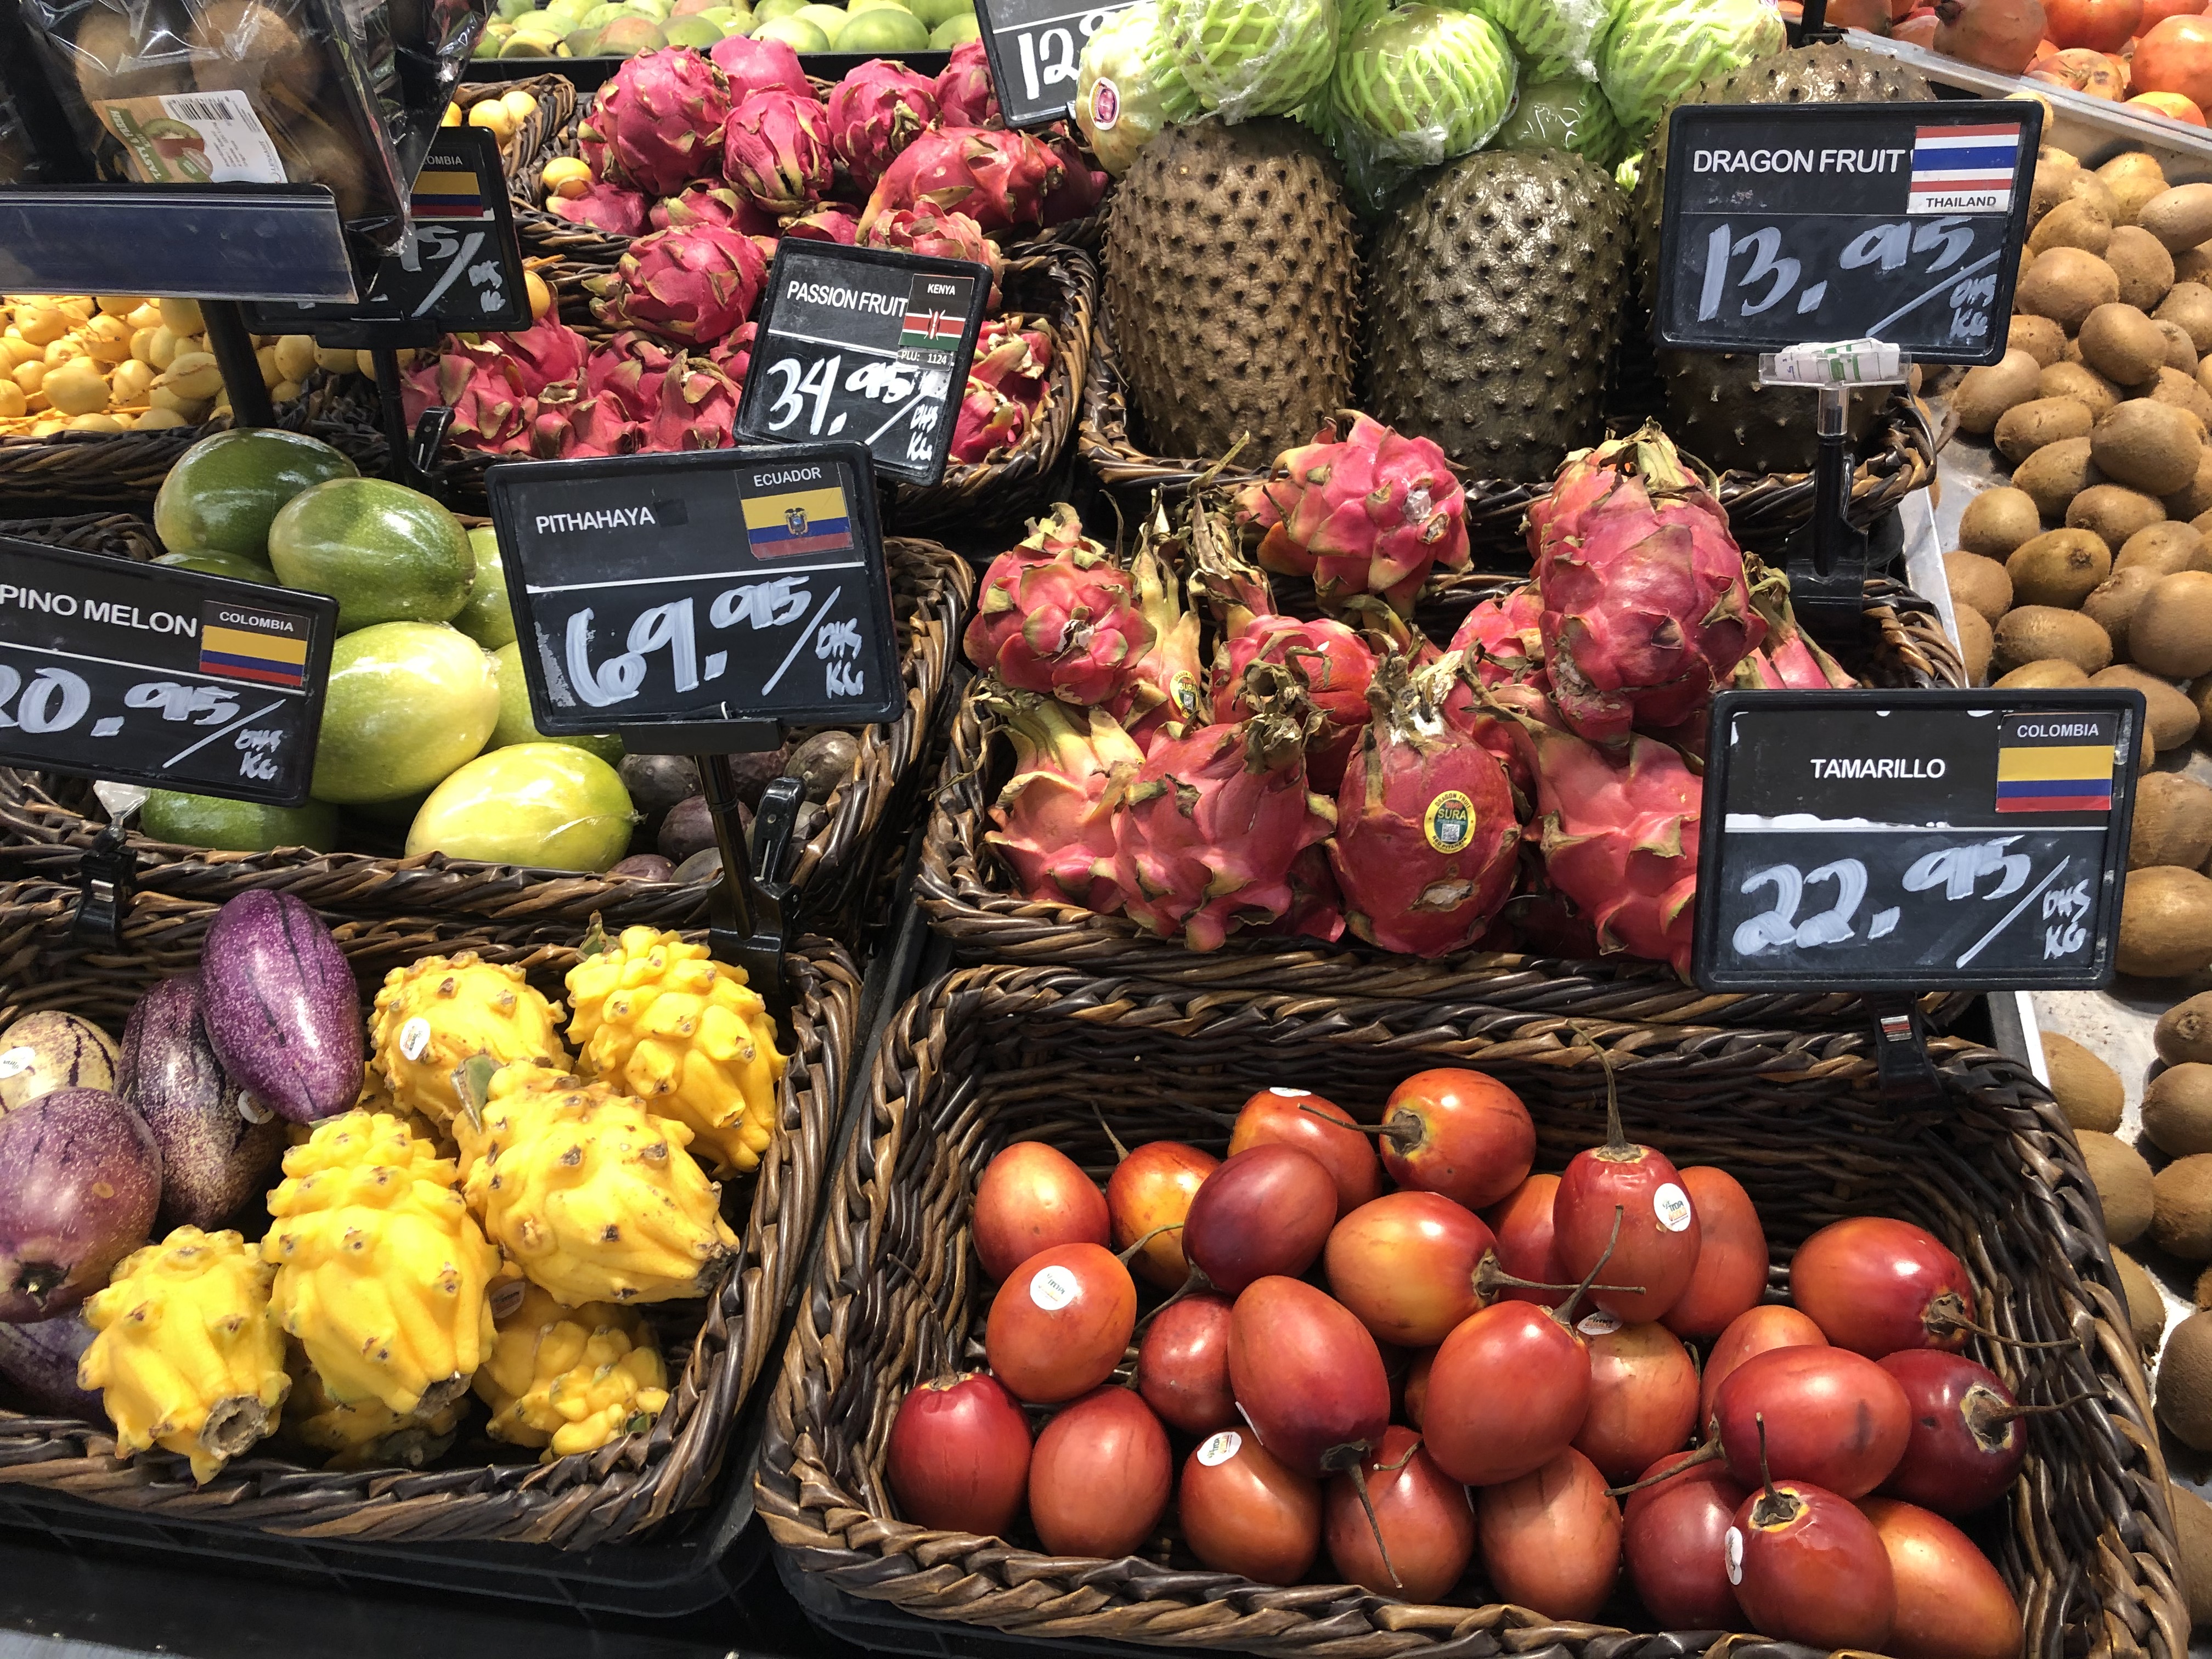 A (számunkra) egzotikus gyümölcsök ugyanolyan teret kapnak a szupermarketekben, mint a barack vagy az alma. Itt a datolyán kívül minden import árucikk, így minden egzotikumnak számít.